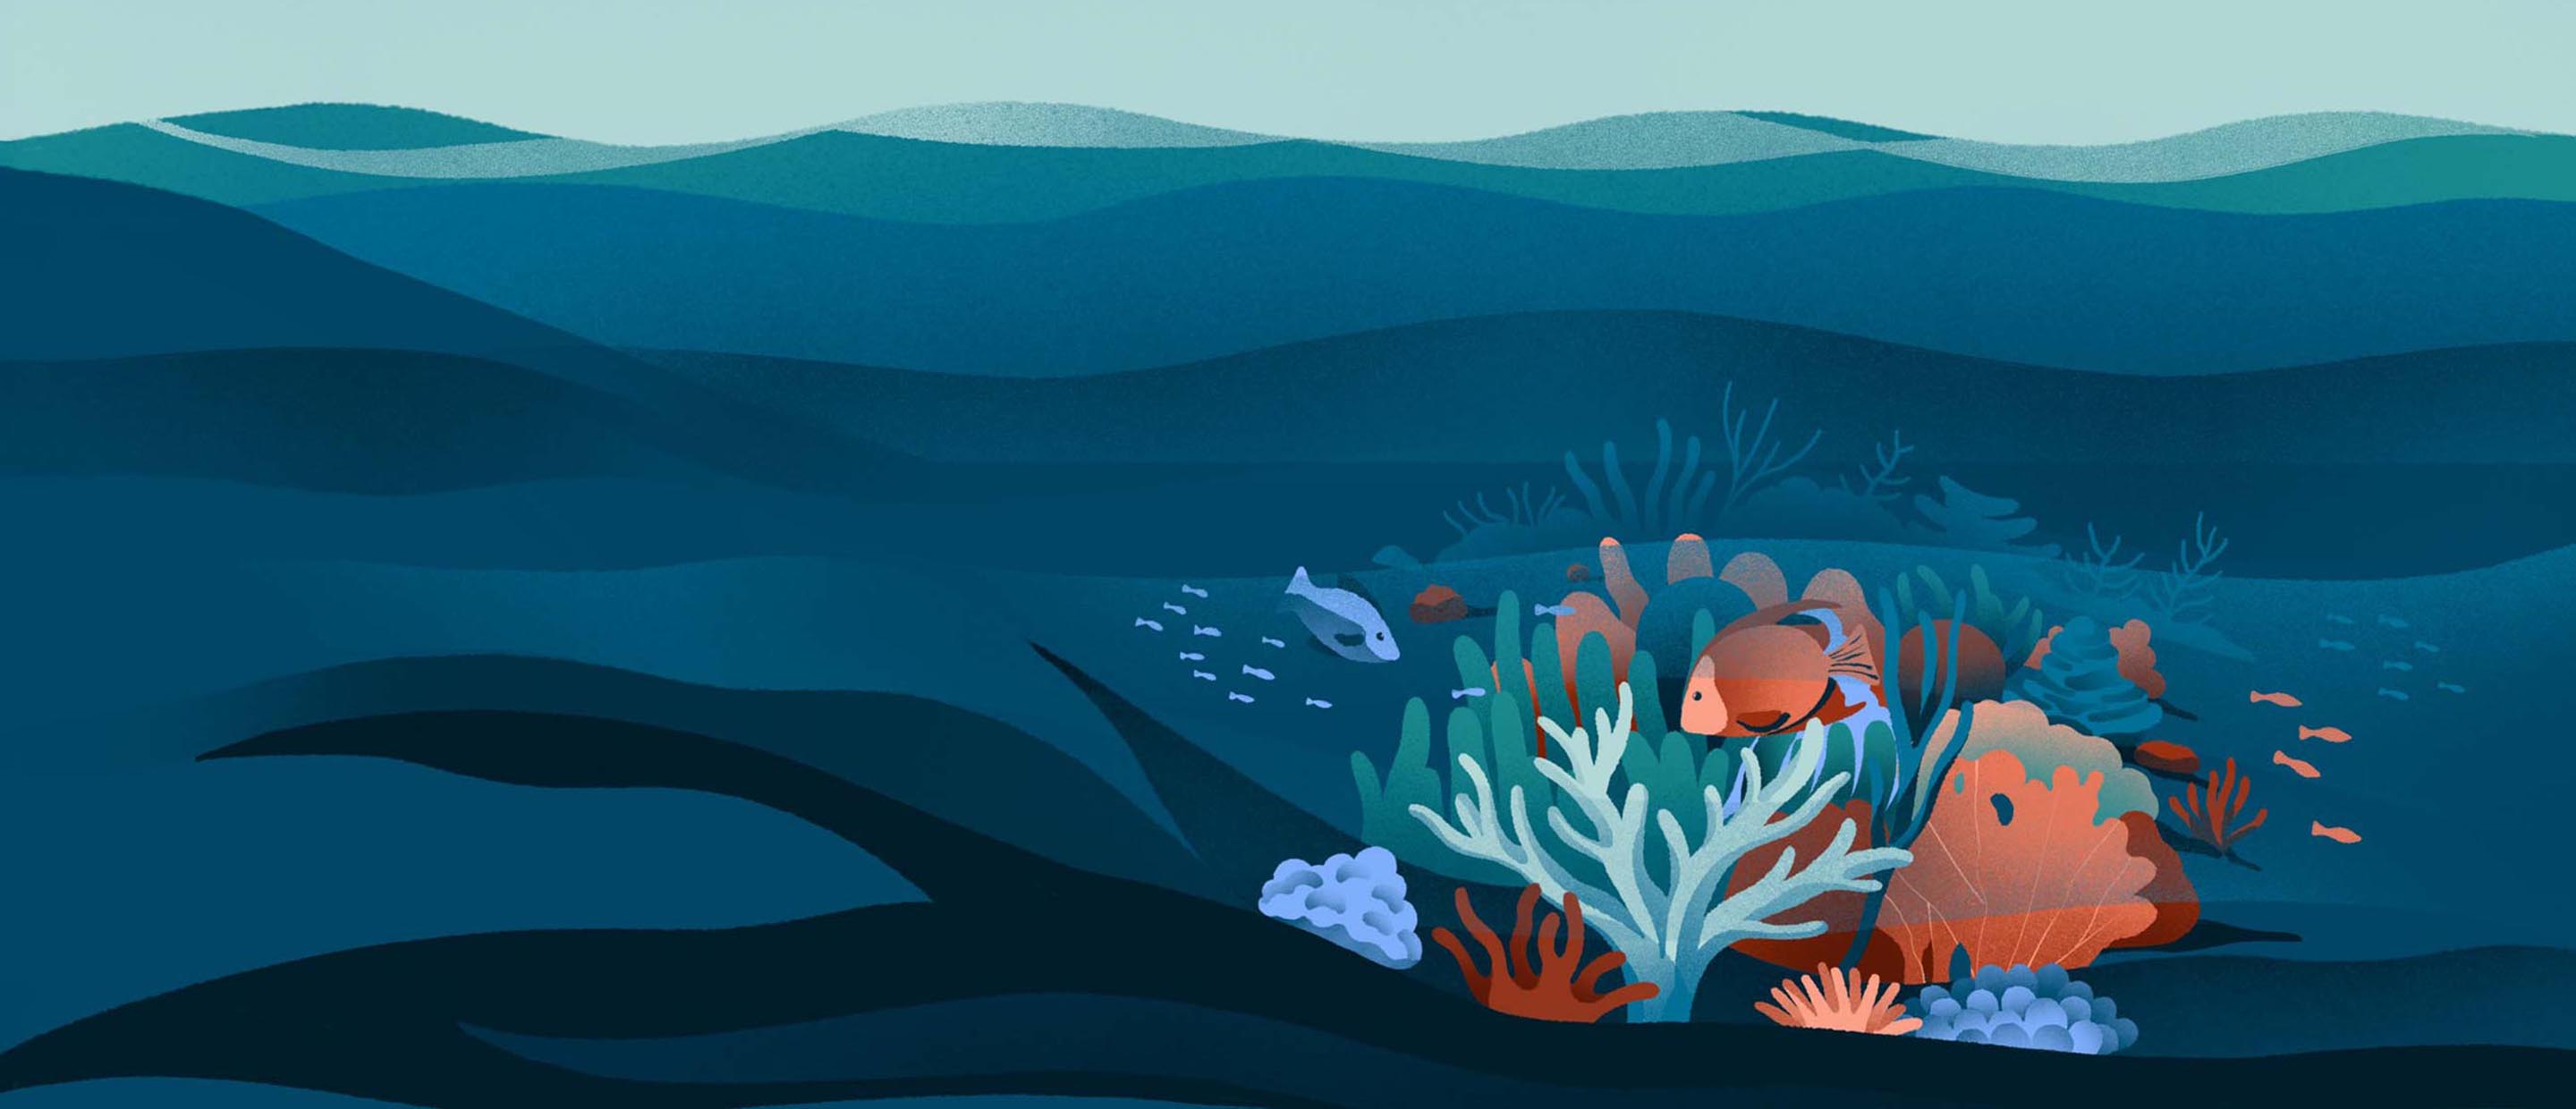 Korallen: der Regenwald des Meeres | Meeresschutz